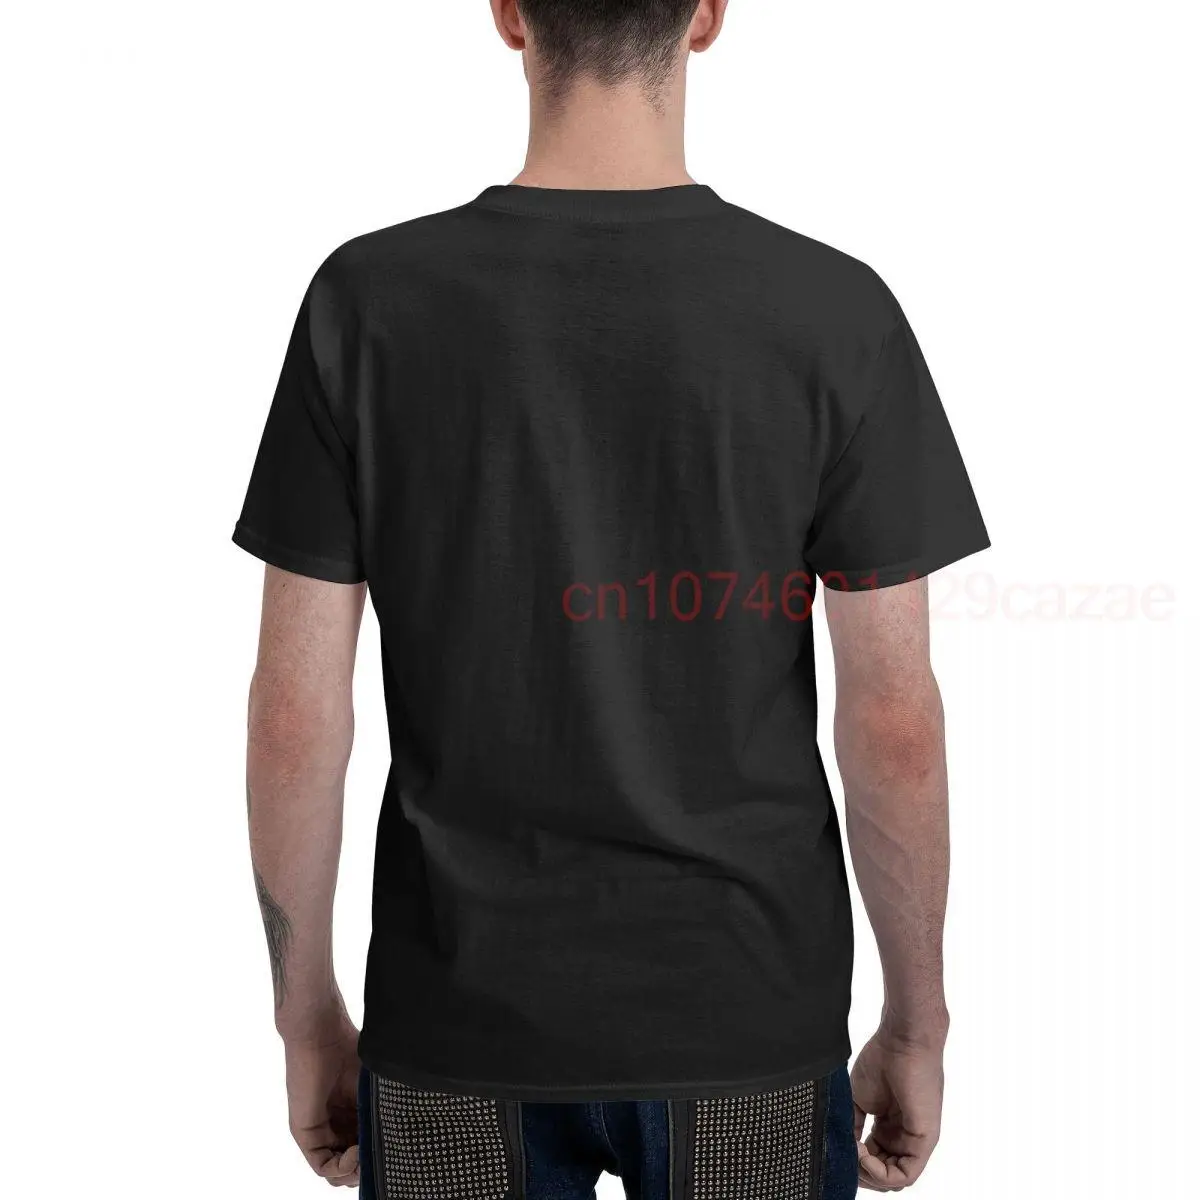 100% Bombaž Lepoto Katmanduju T-Shirt MOŠKI ŽENSKE UNISEX Majice s kratkimi rokavi Velikosti S-6XL